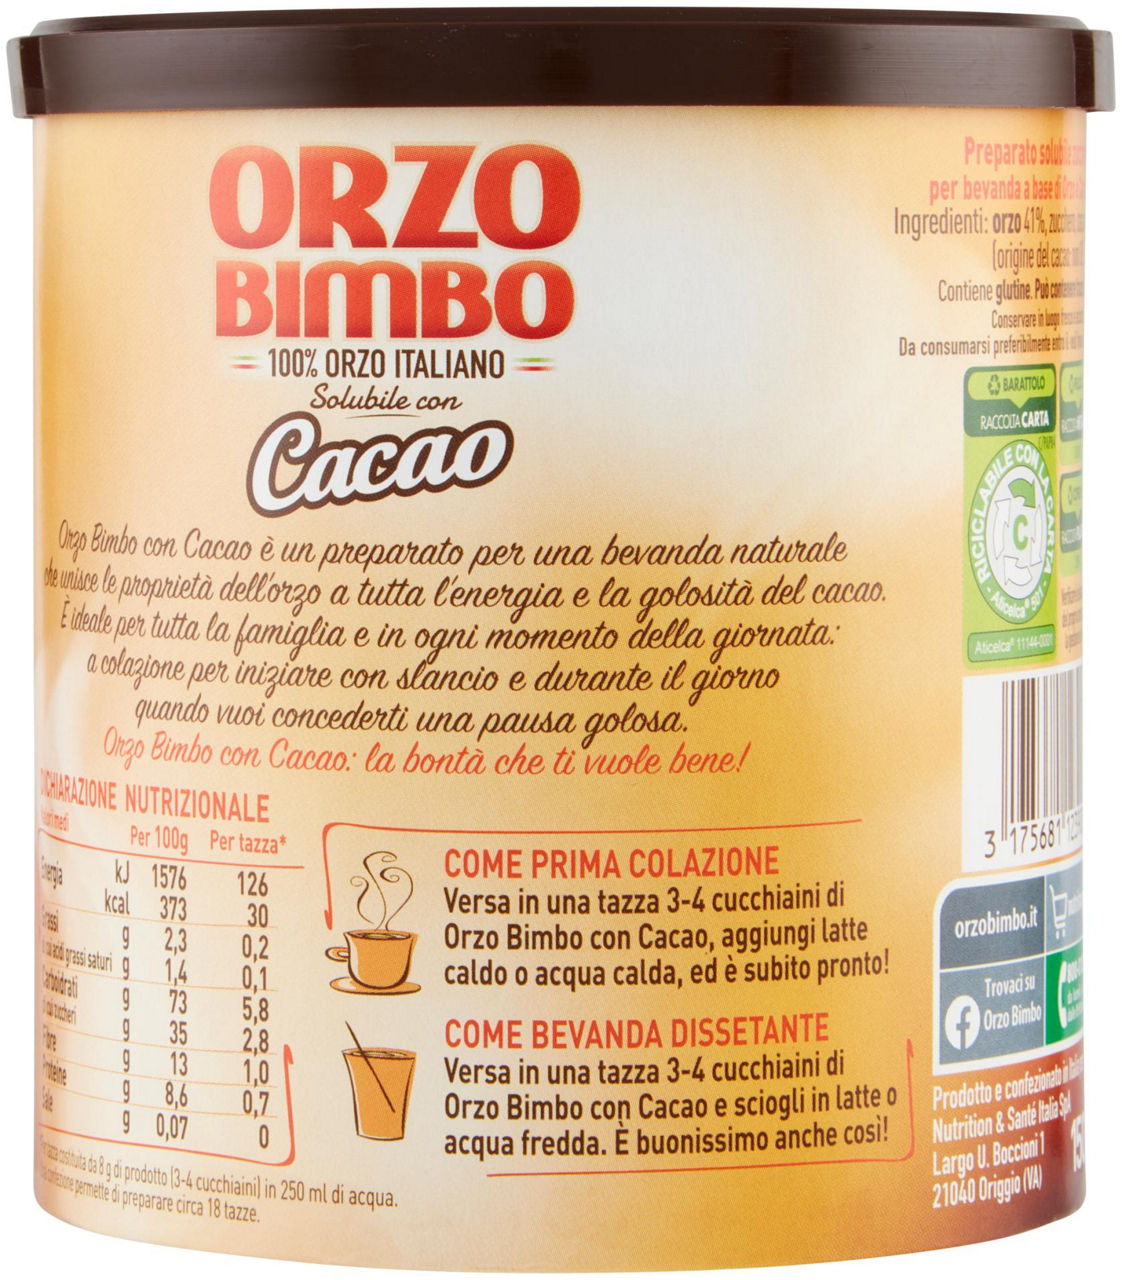 ORZO BIMBO SOLUBILE CON CACAO BARATTOLO GR 150 - 2